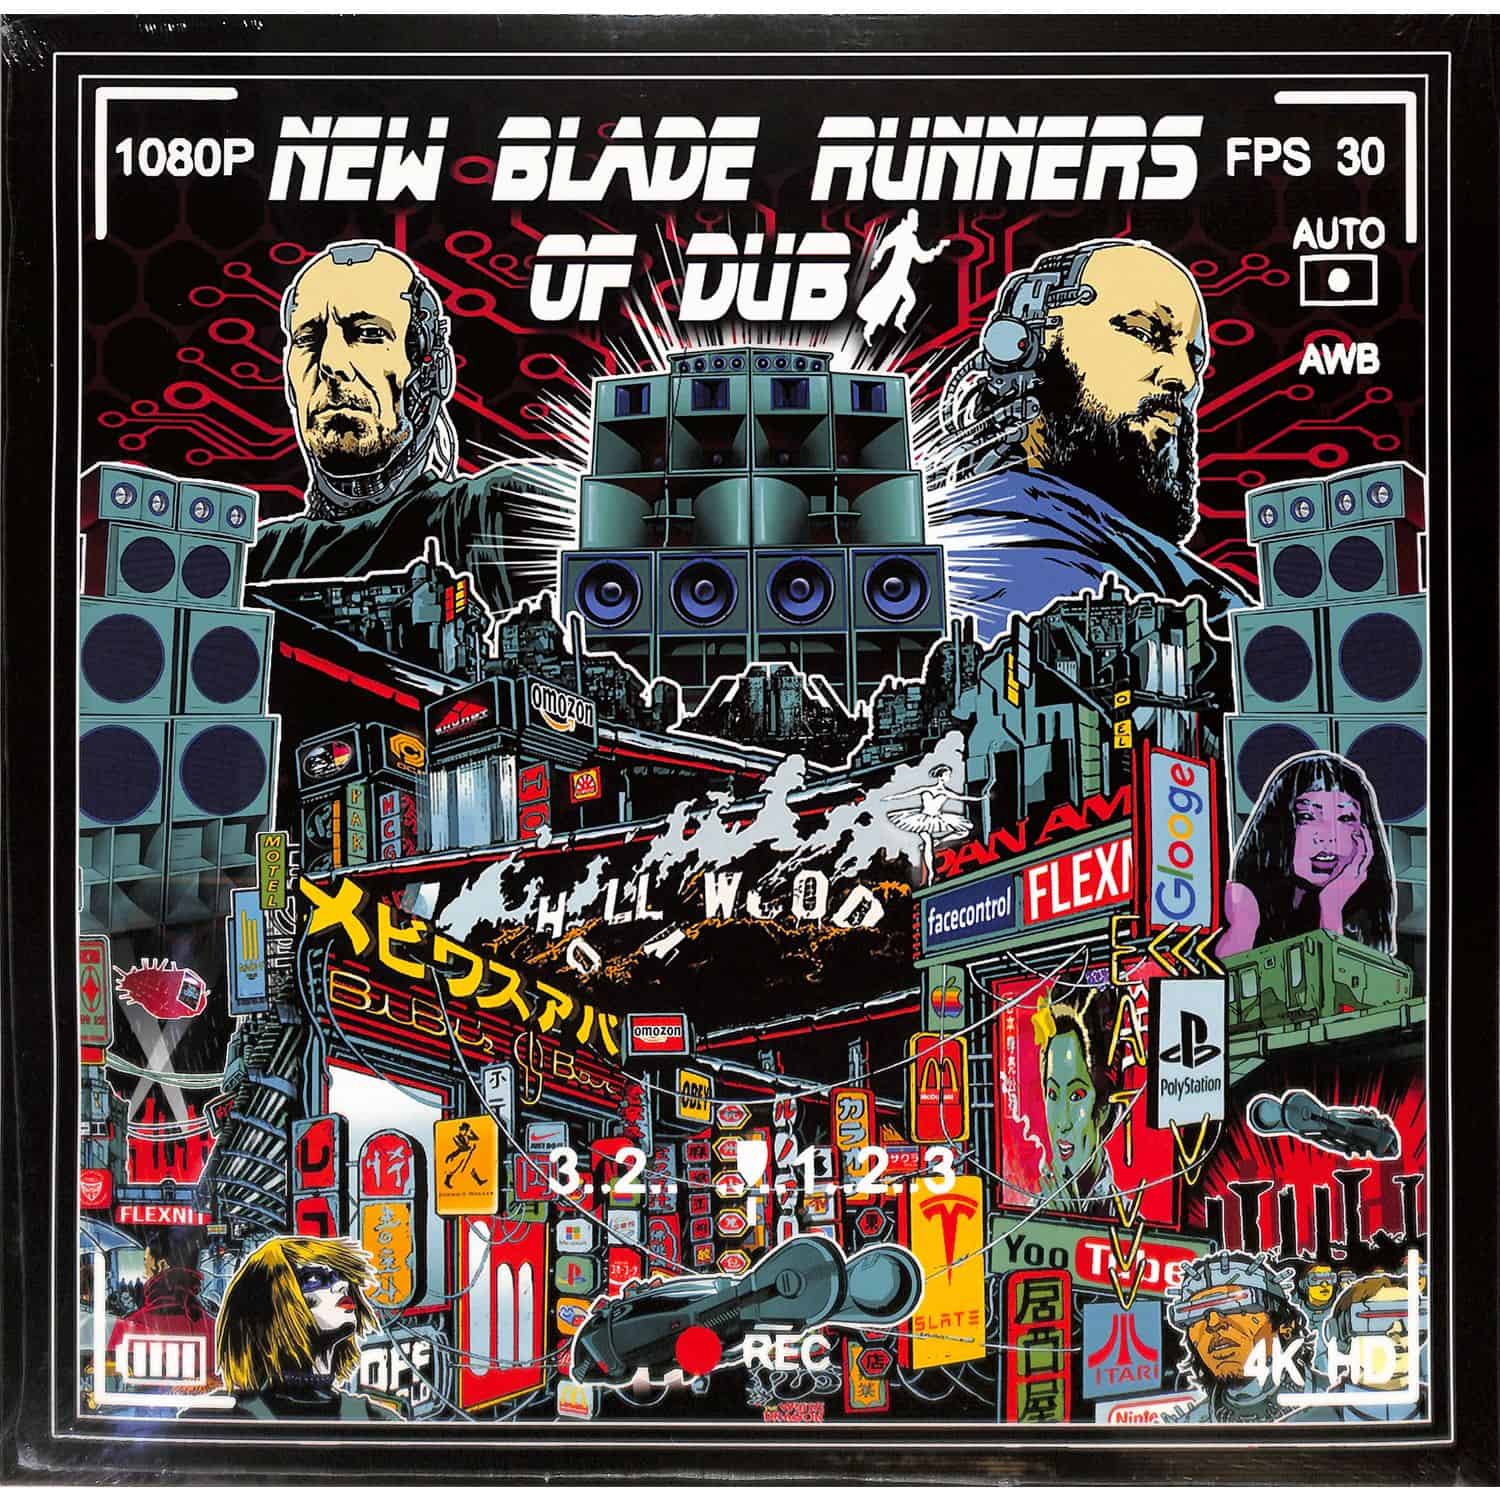 New Blade Runners Of Dub - NEW BLADE RUNNERS OF DUB 